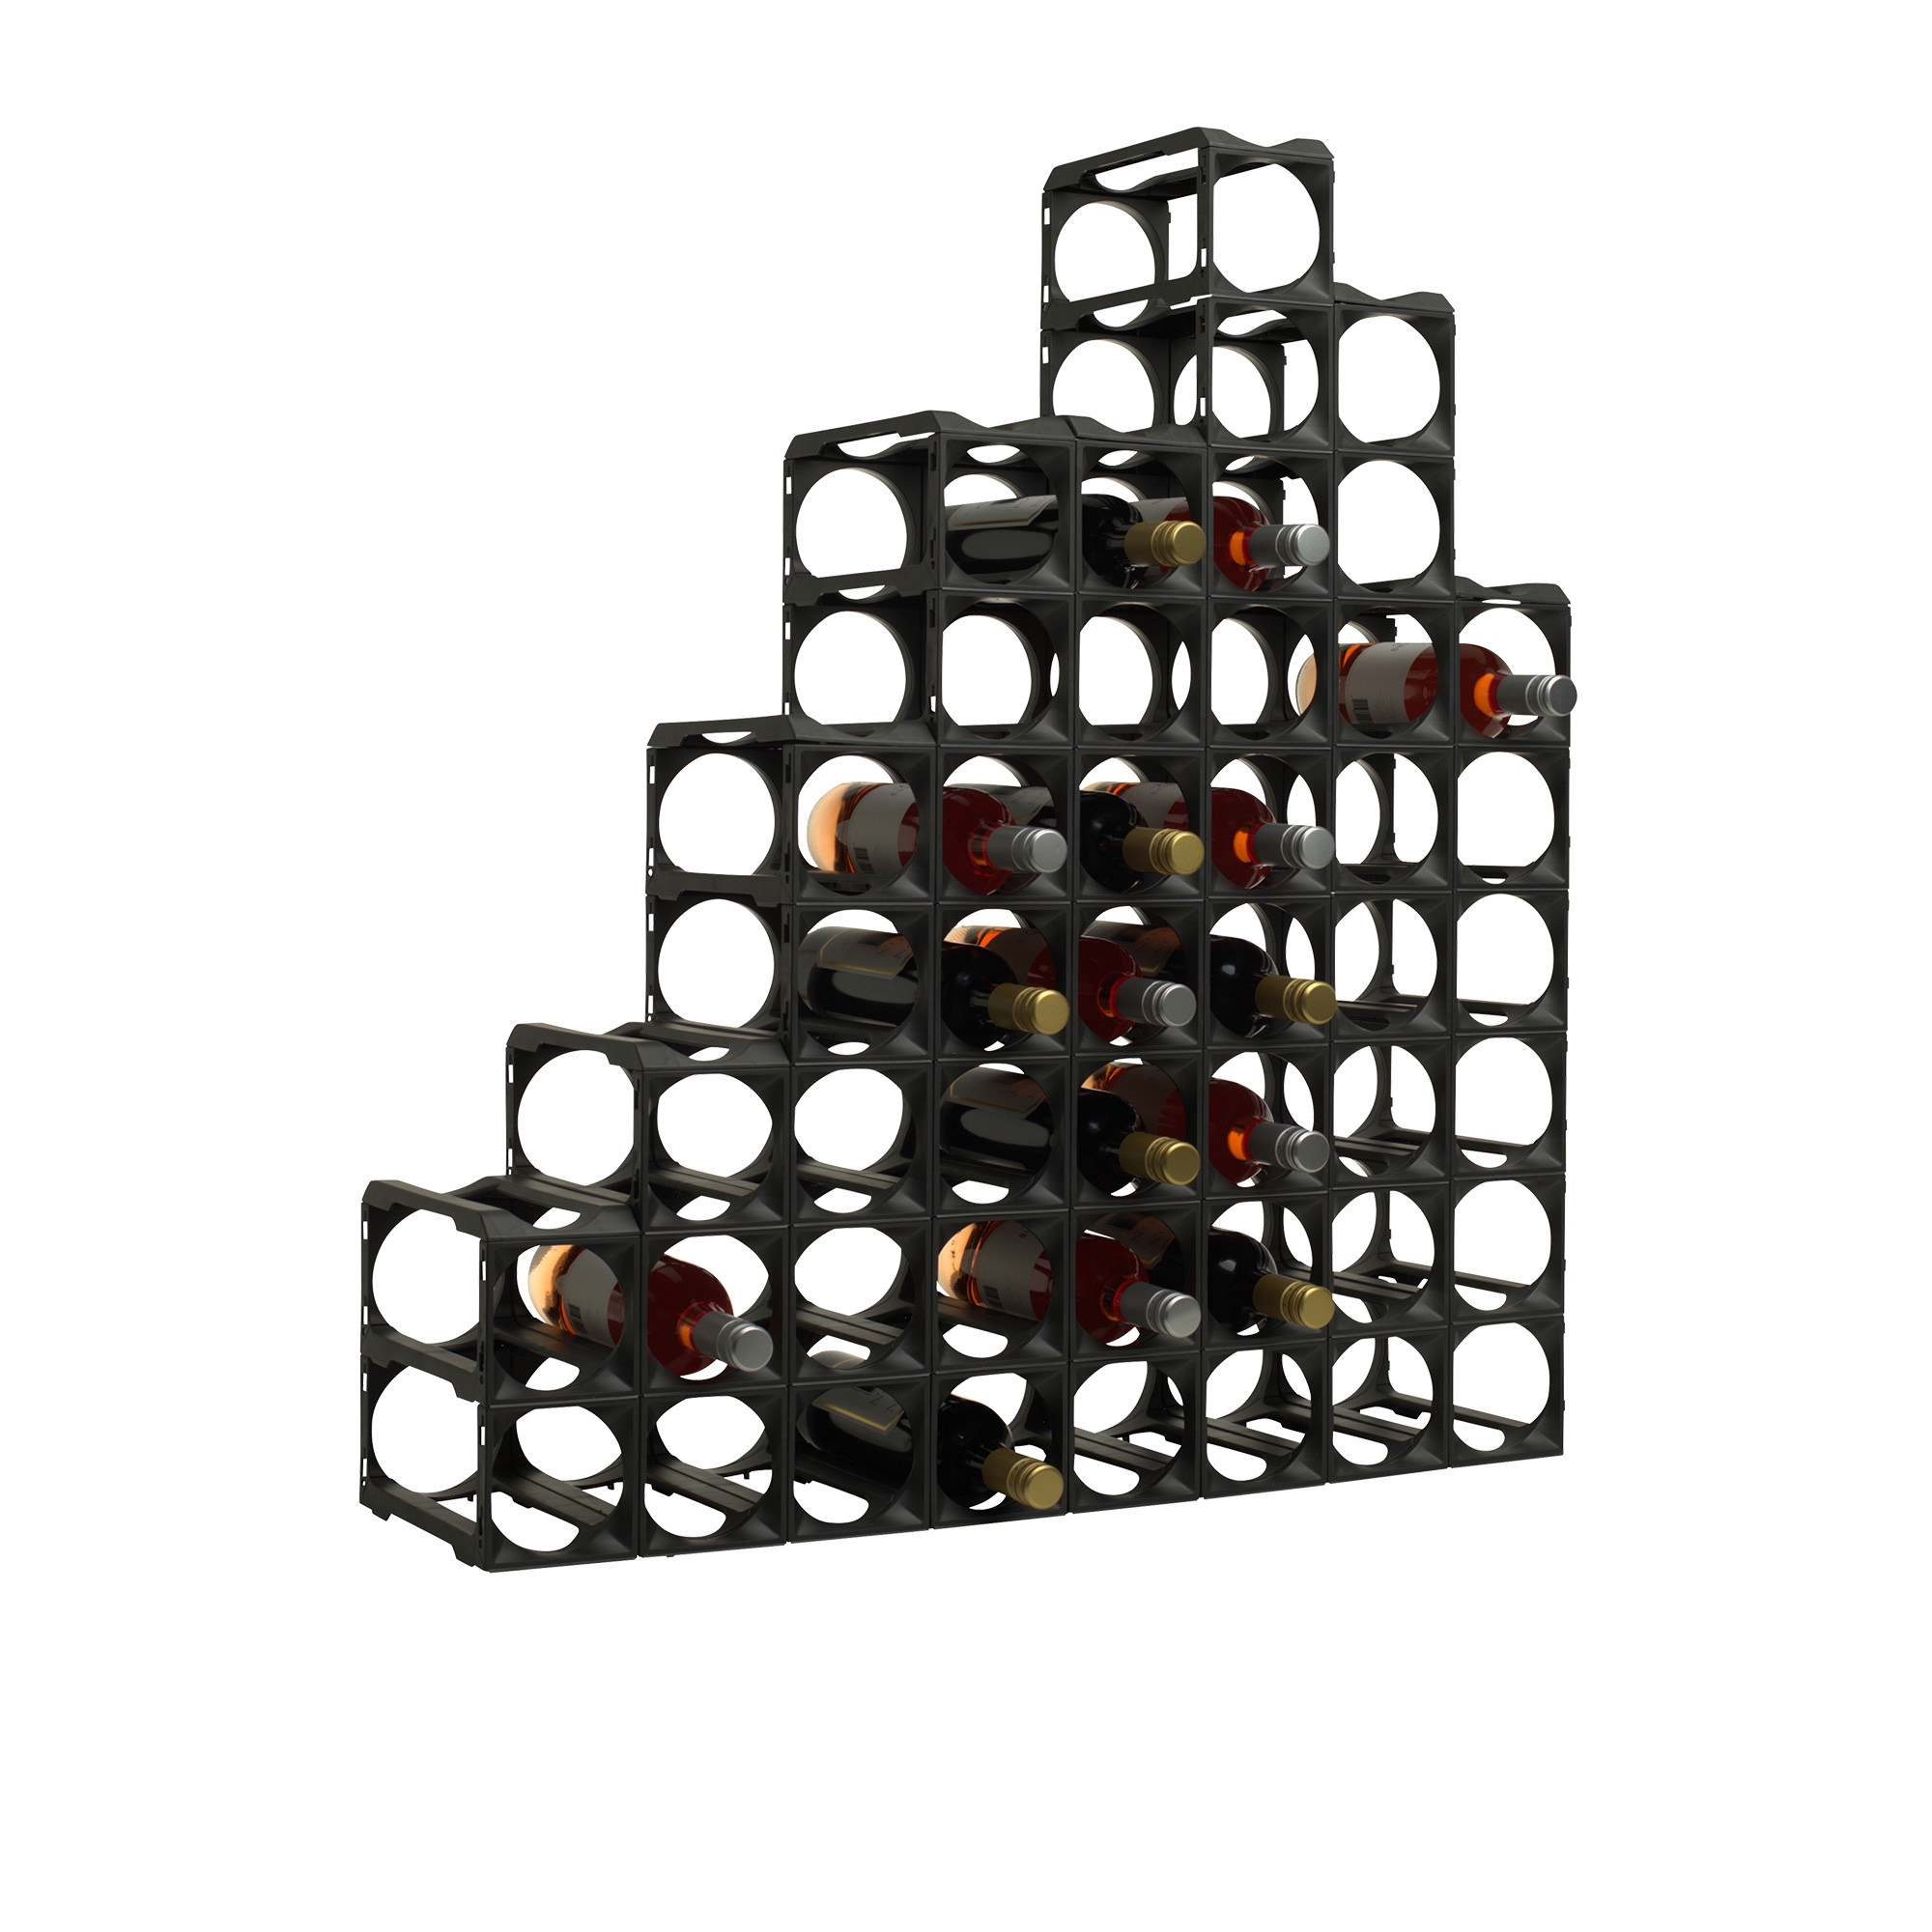 Stakrax Modular Wine Storage Kit 30 Bottle Black Image 2